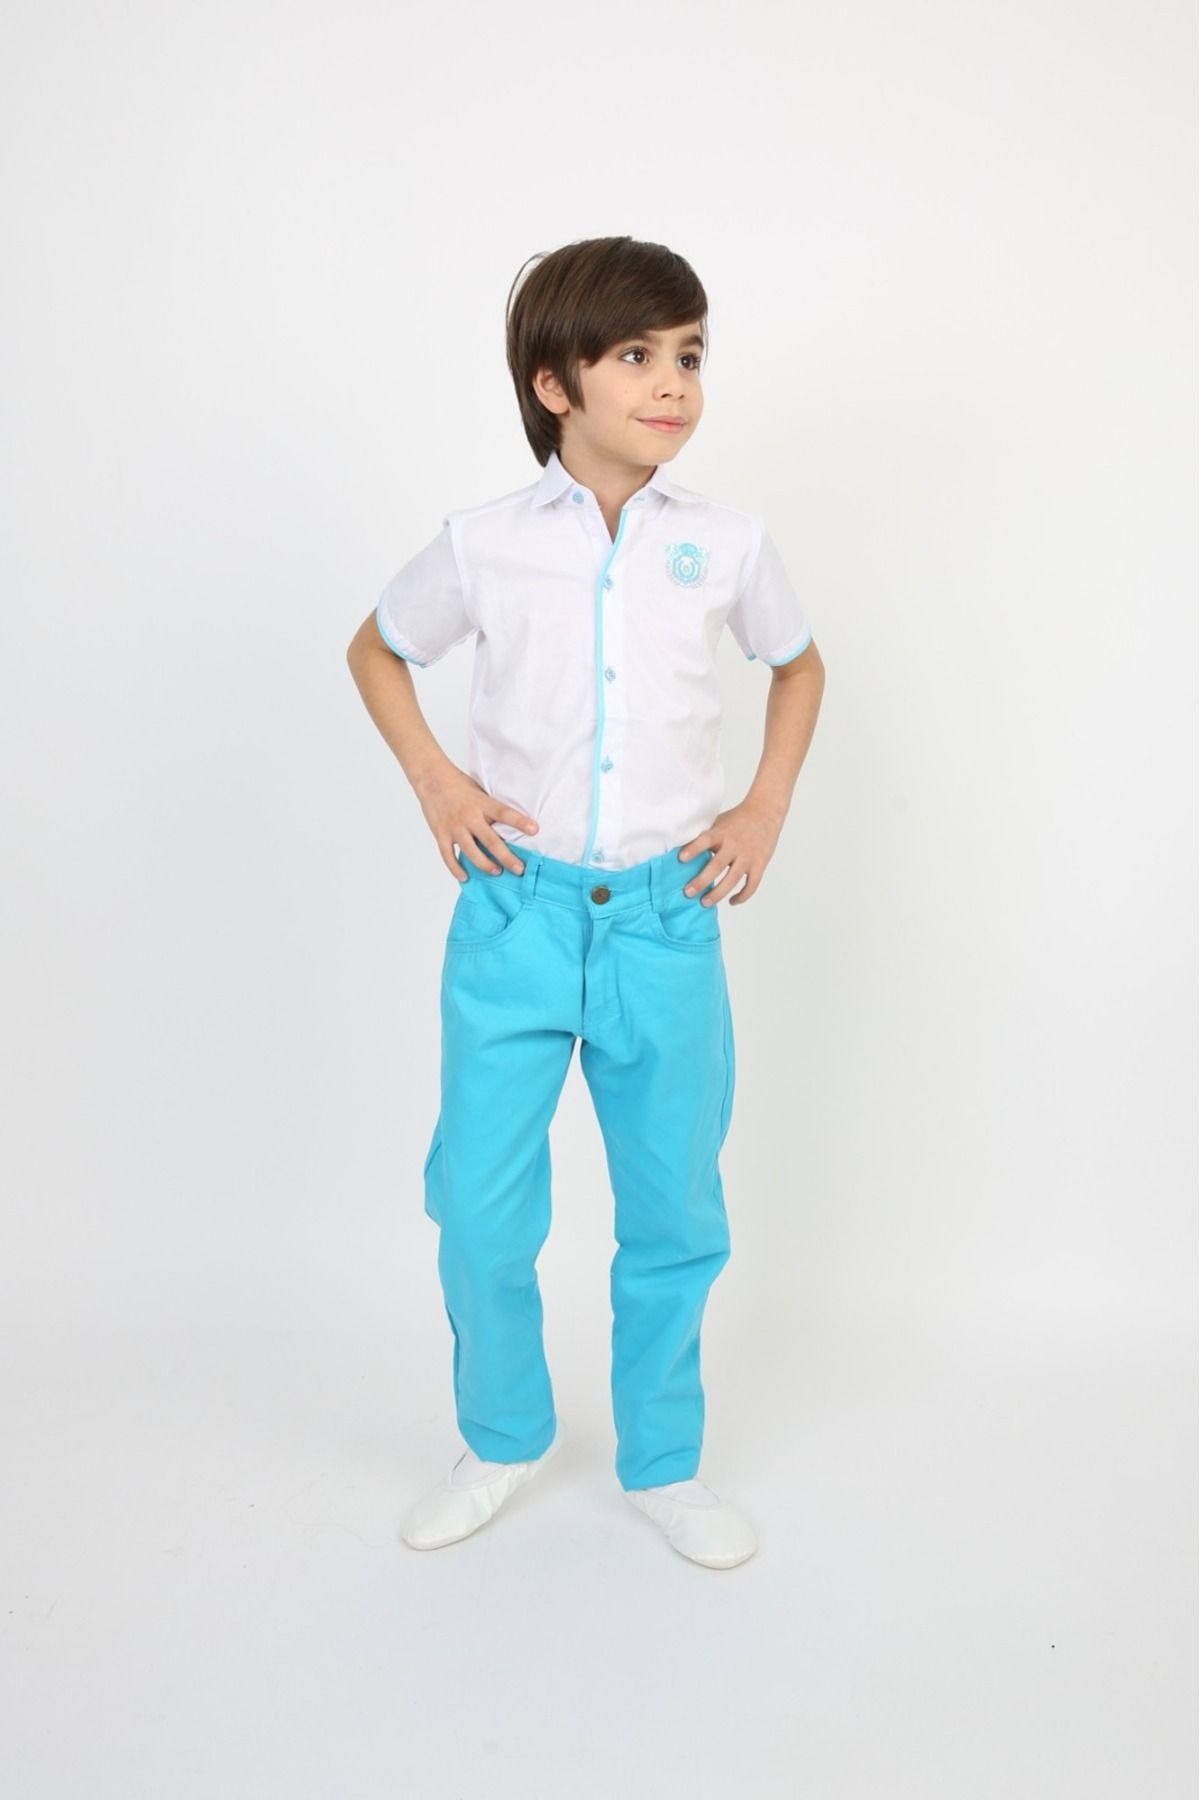 FATELLA Erkek Çocuk Kısa Kol Gömlek Pantolon Askı Papyon Kravat 23 Nisan 29 Ekim Gösteri Kıyafeti